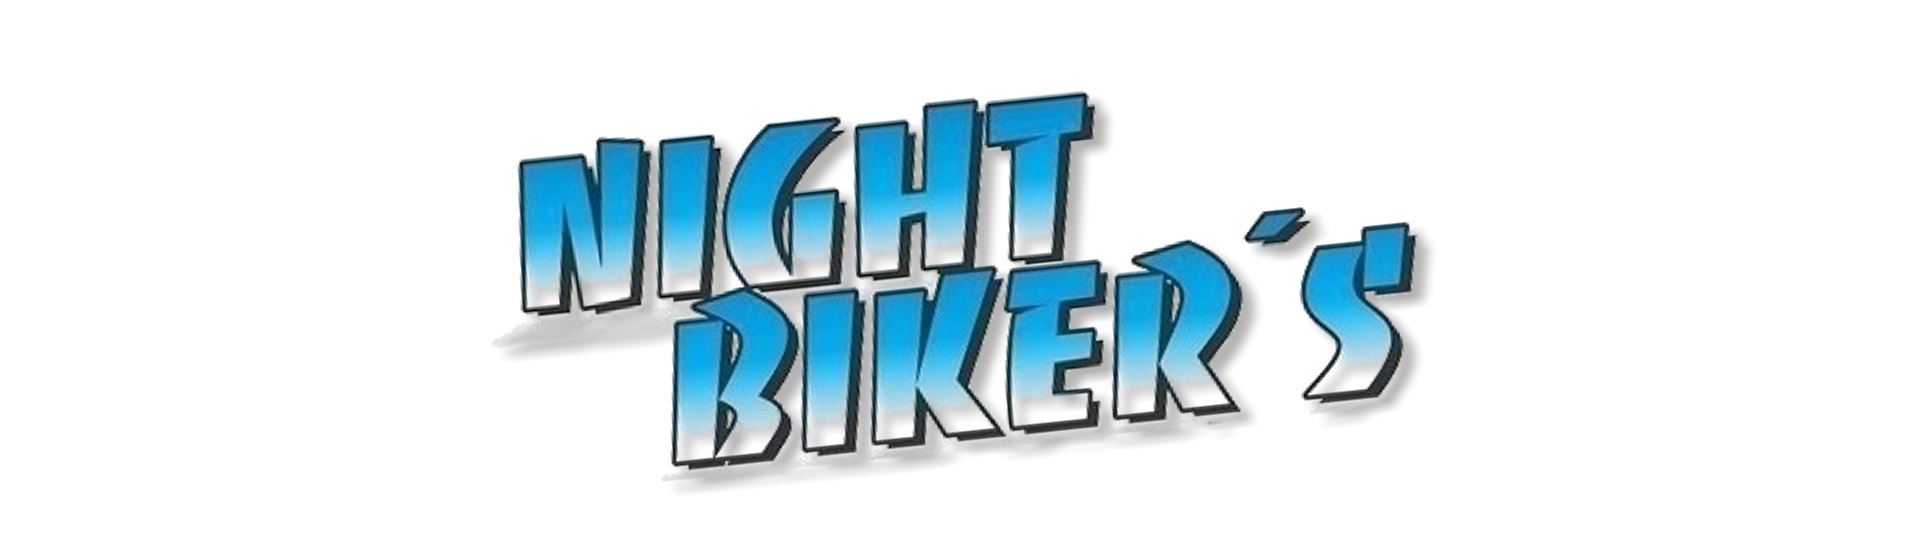 Night Bikers!!!